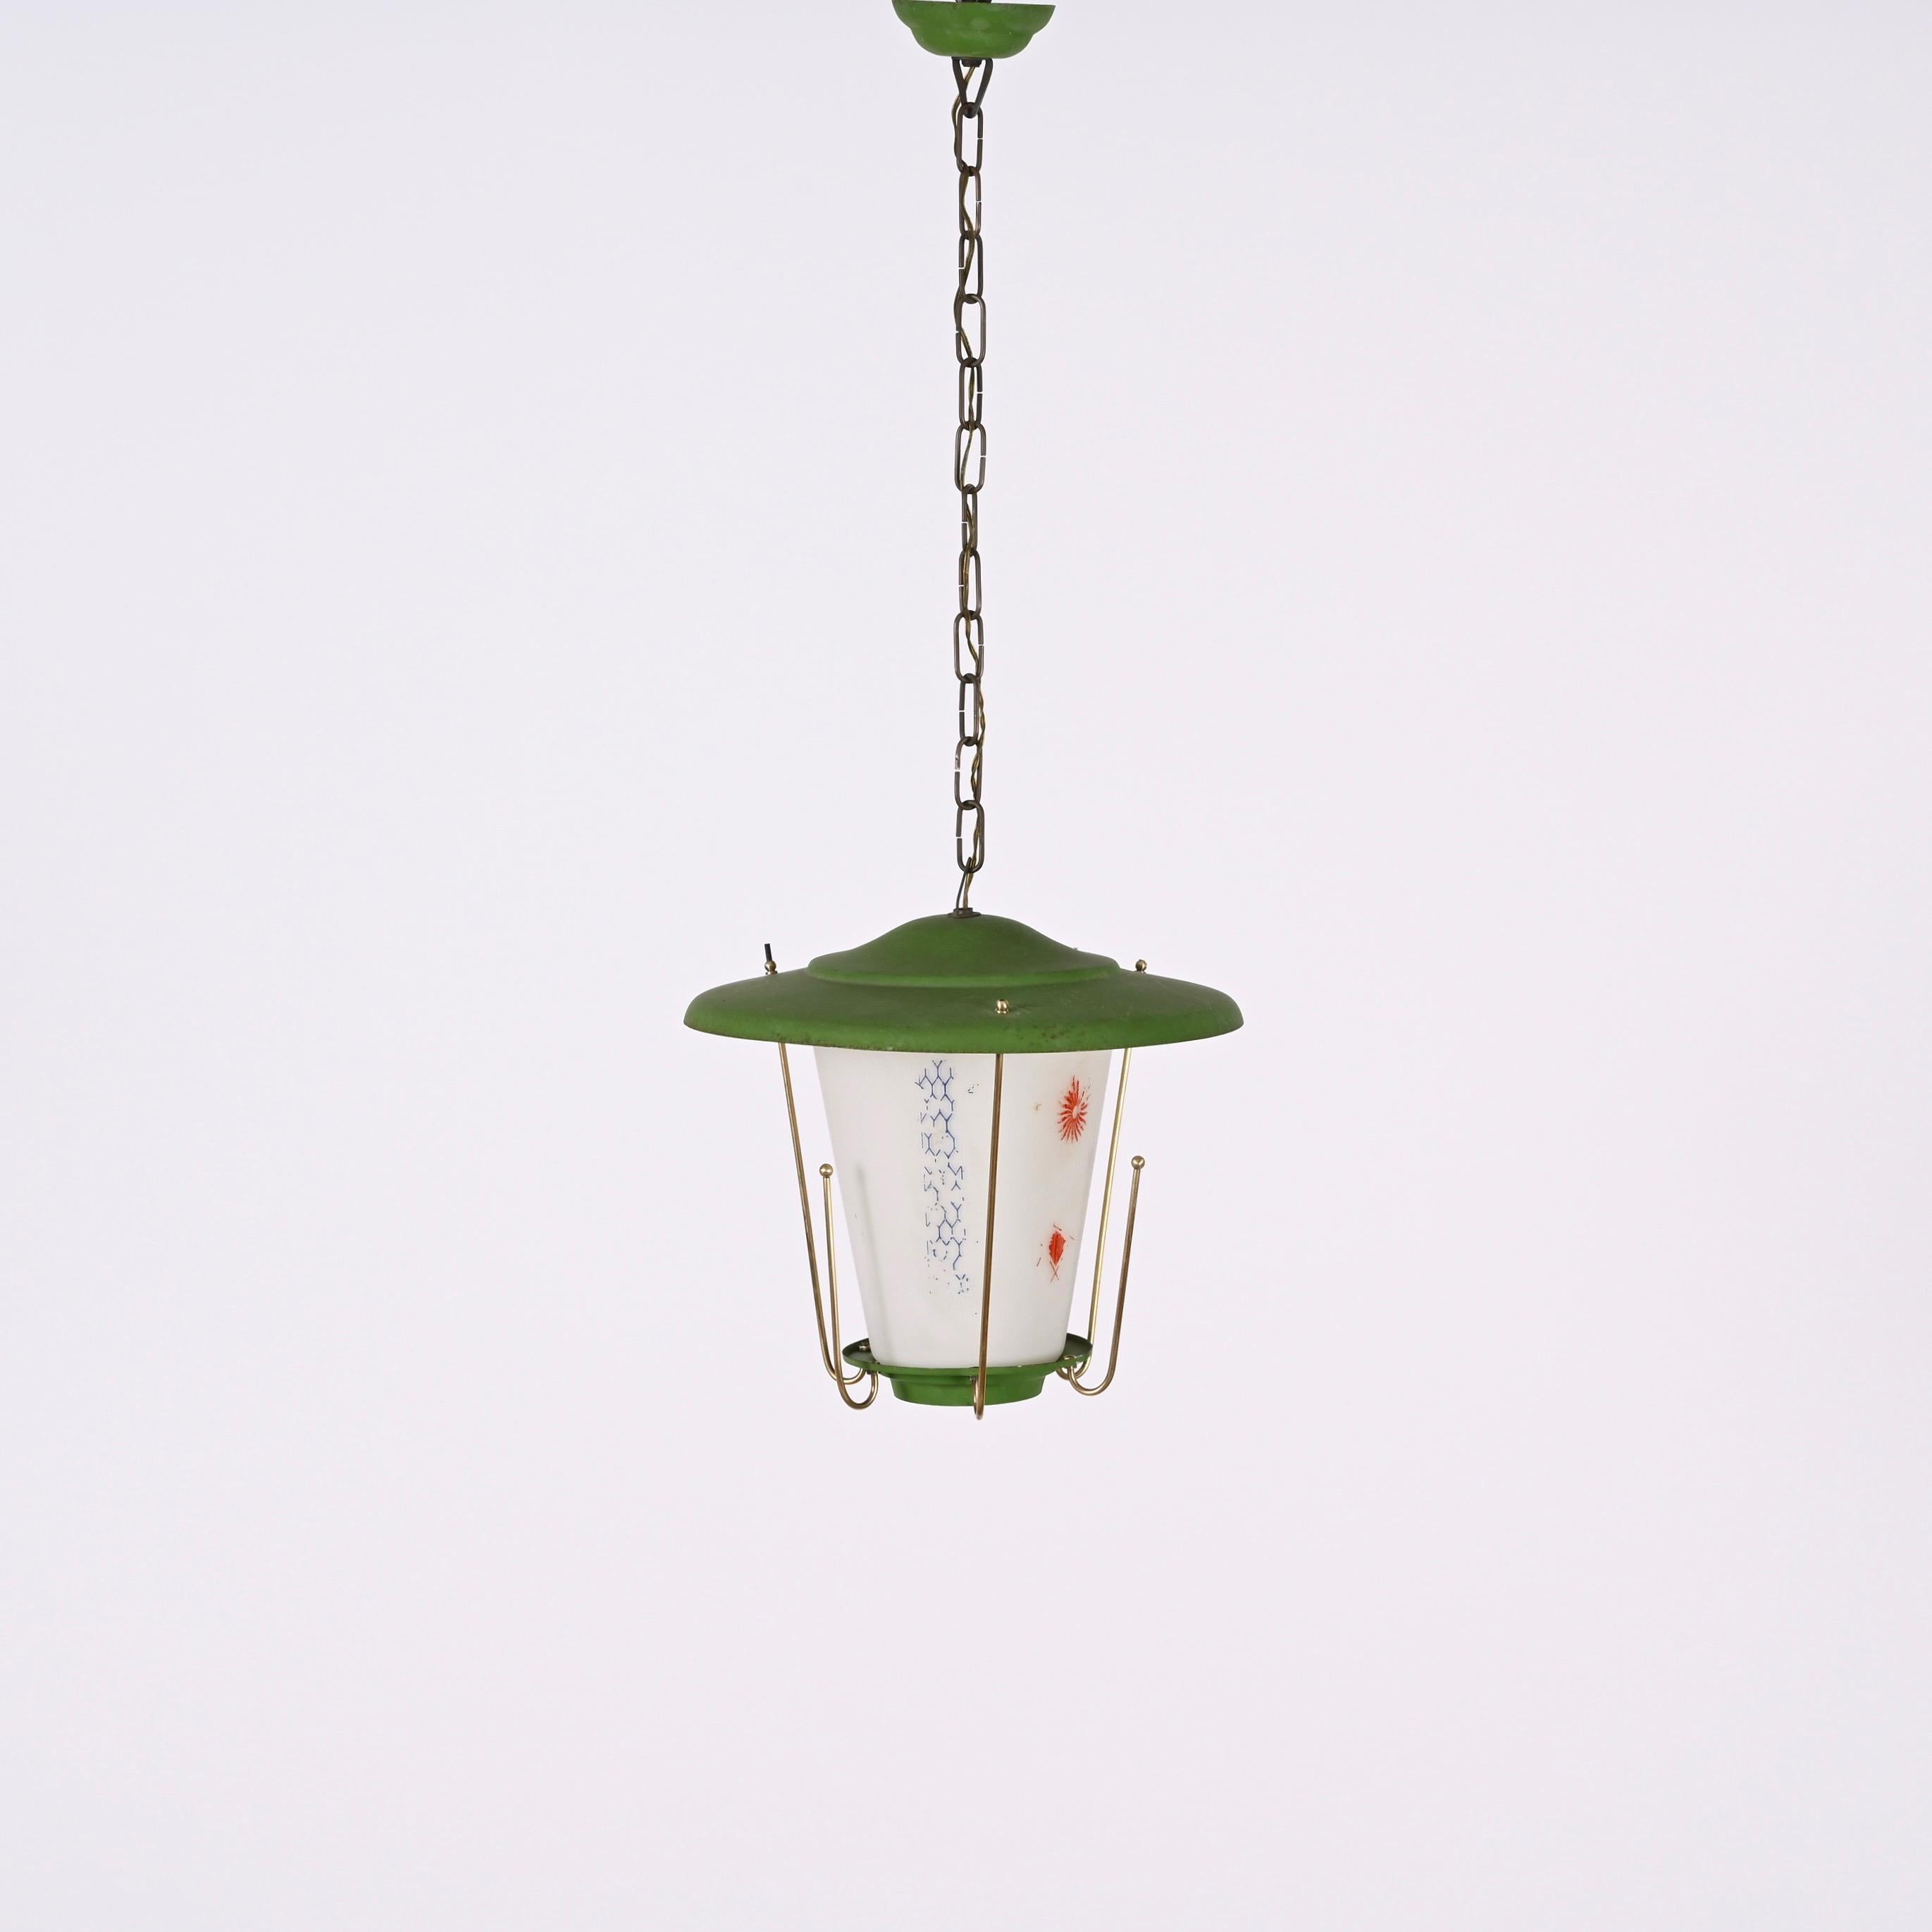 Erstaunlich Mitte des Jahrhunderts rund Opalglas und Messing grün Laterne Kronleuchter. Dieses fantastische Stück wurde in den 1950er Jahren in Italien entworfen.

Dieses Stück ist wunderschön, da die Kombination von Materialien und Farben sehr